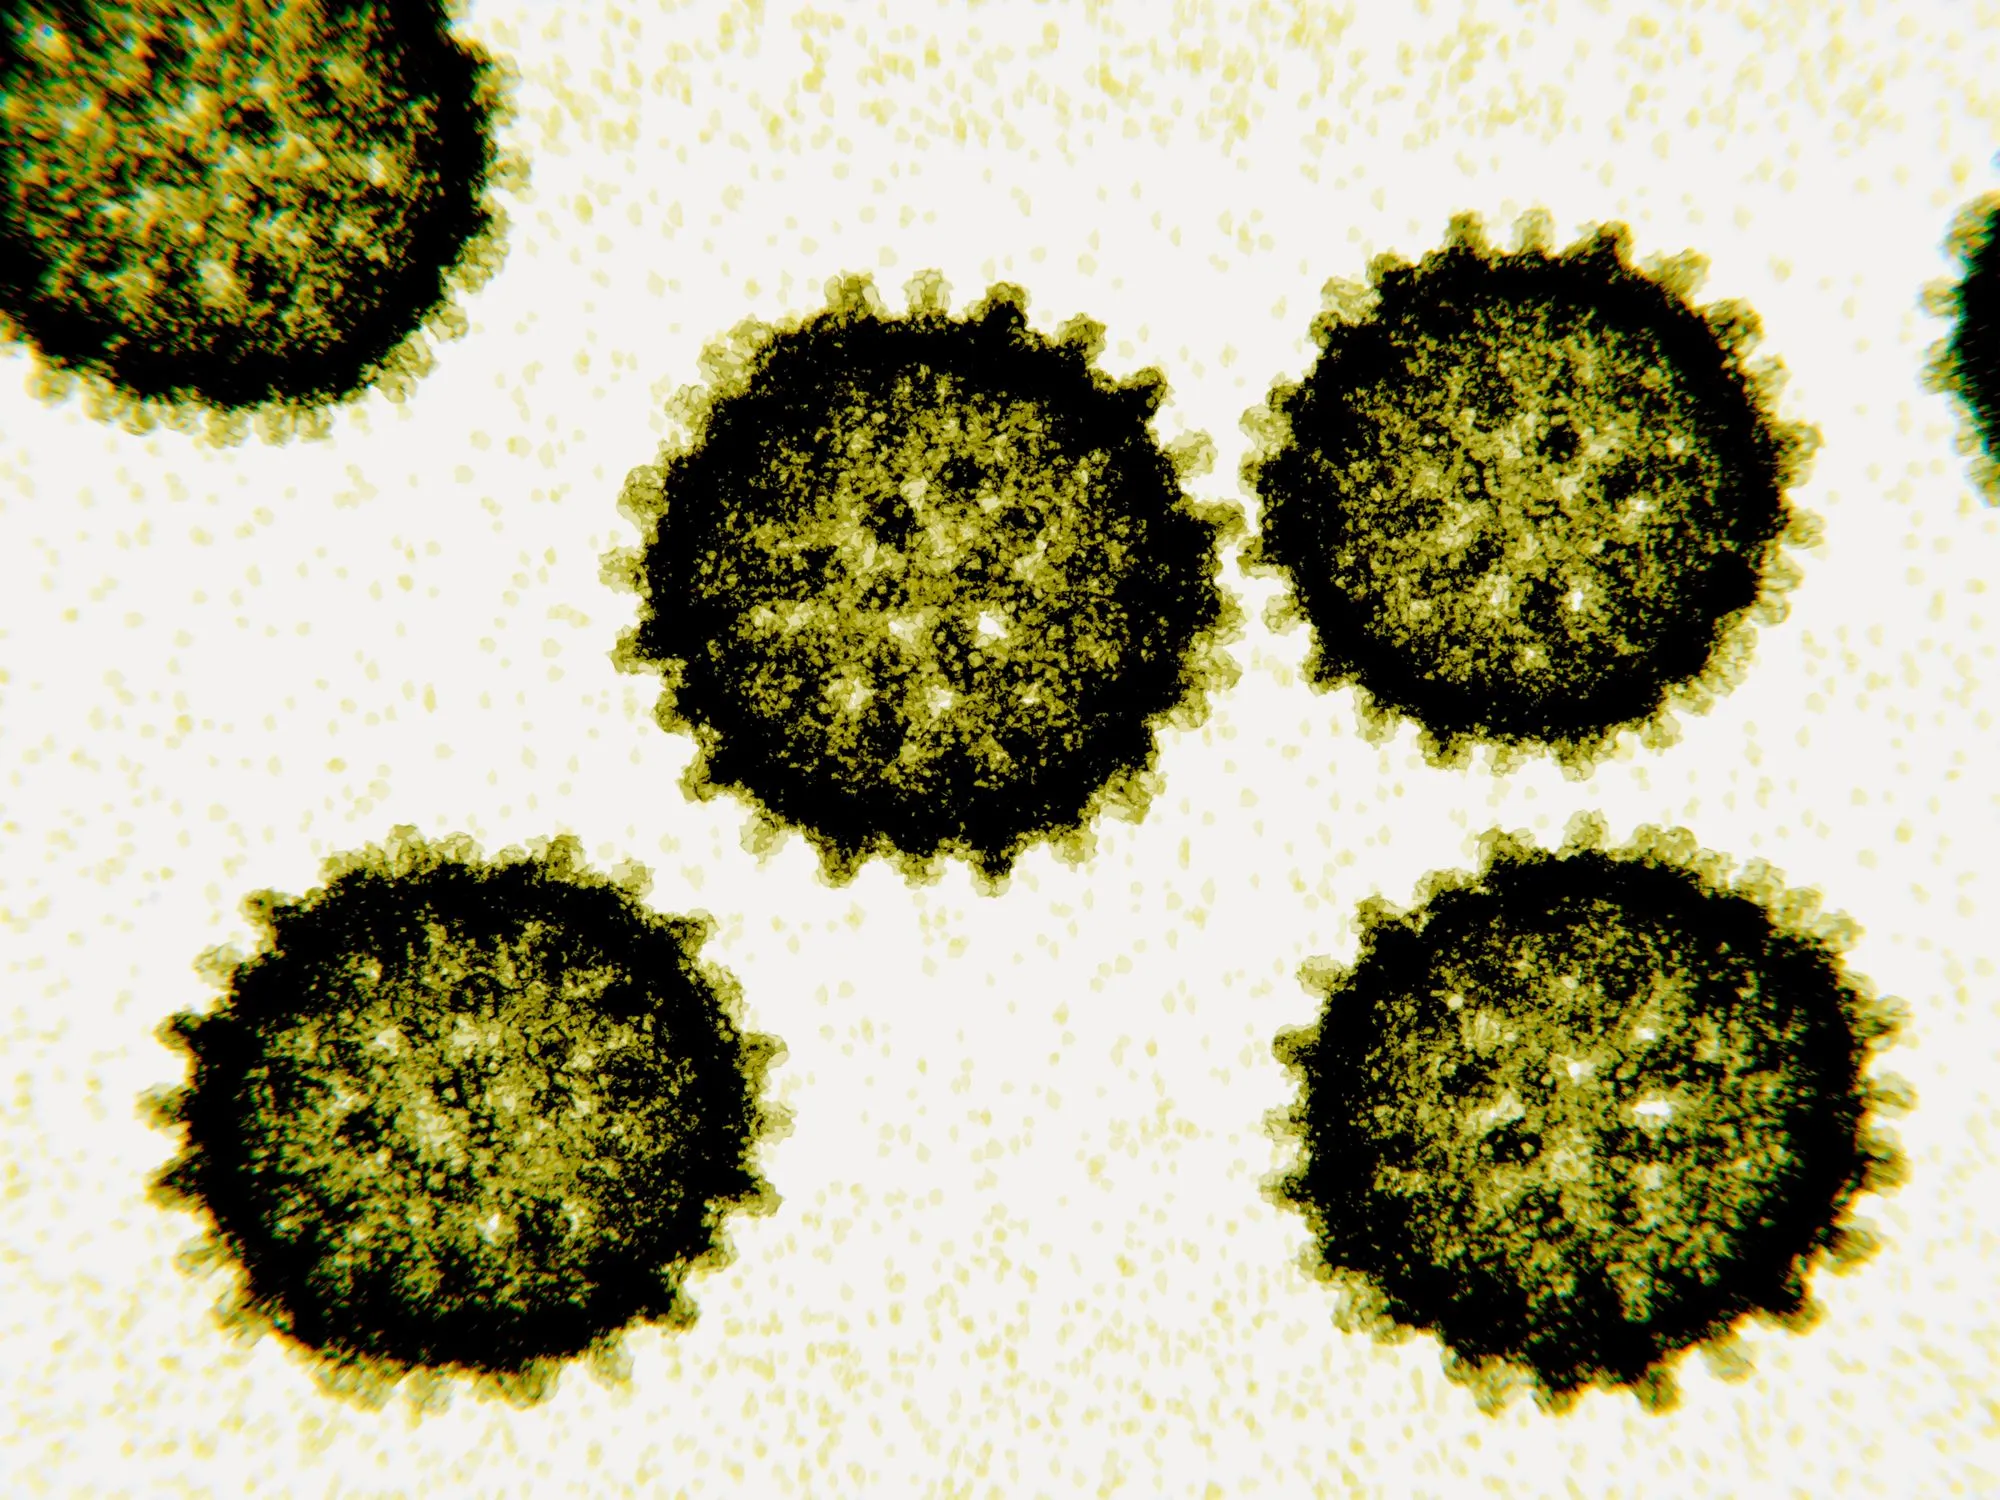 Photographie du virus responsable de l'Hépatite C